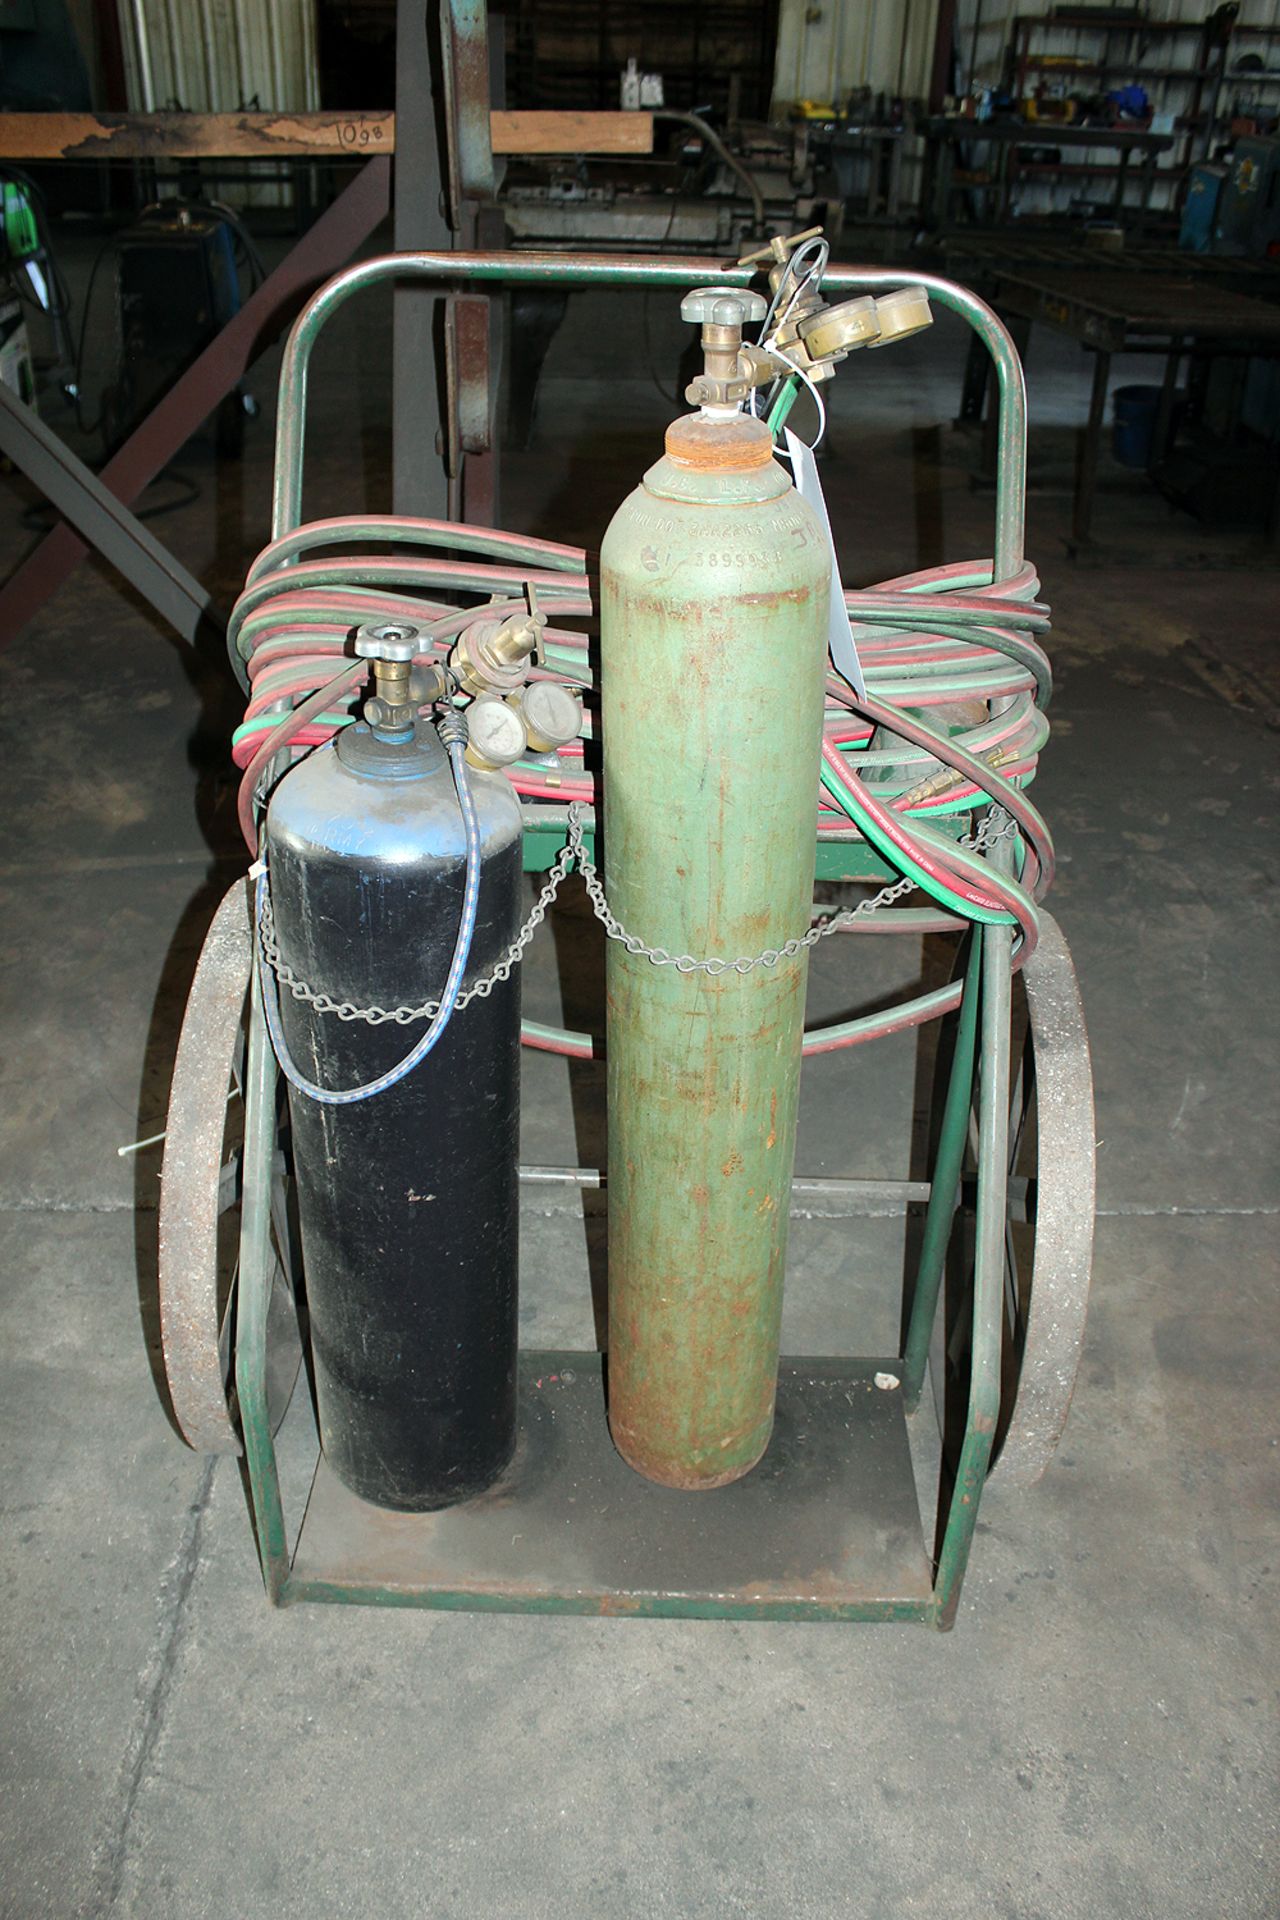 Torch Set includes, Tanks, cart, hose, gauges and regulators